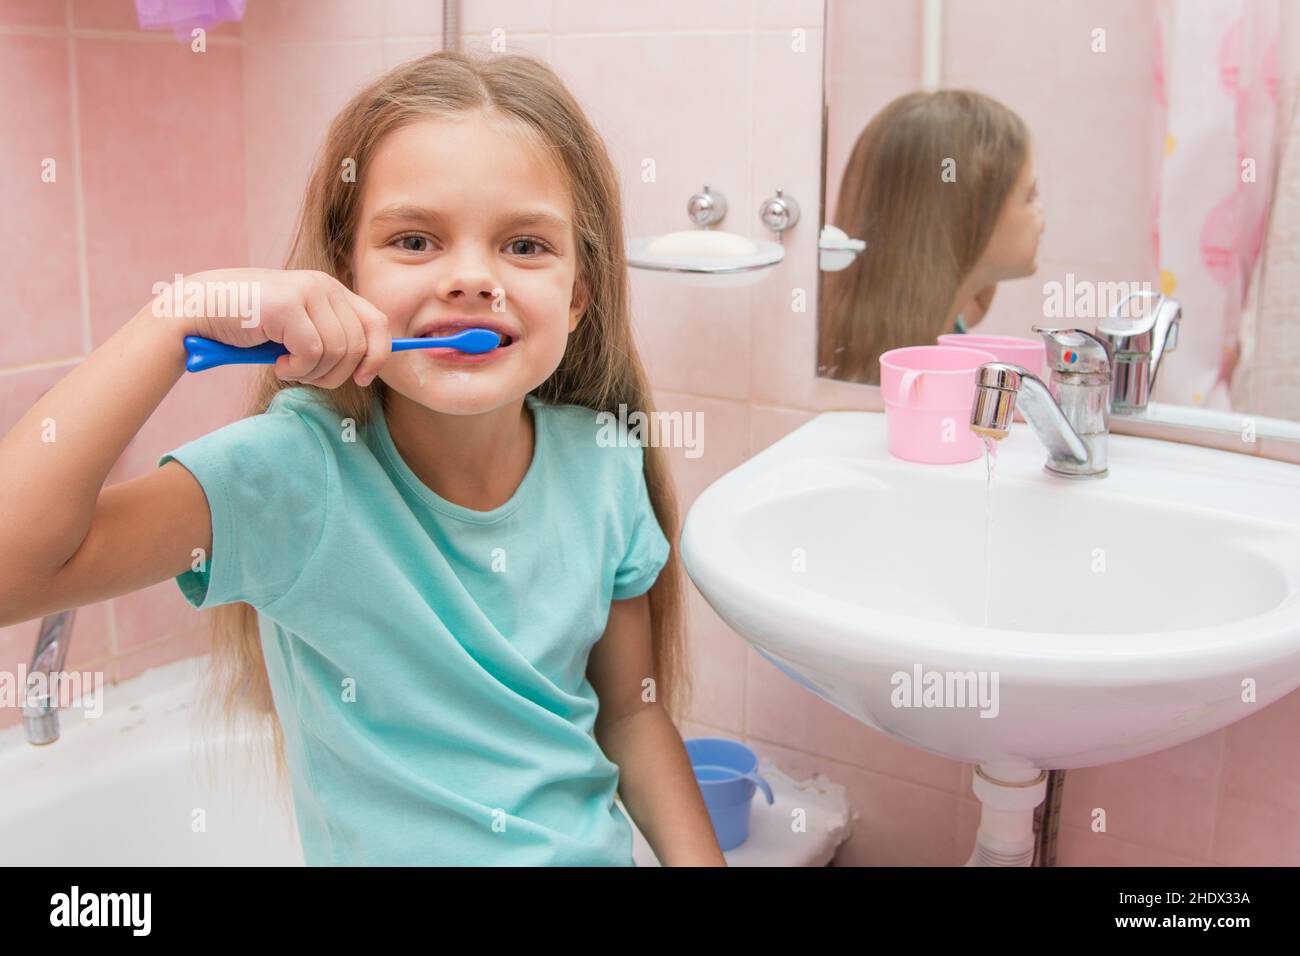 girl, brushing teeth, girls, brushing teeths Stock Photo